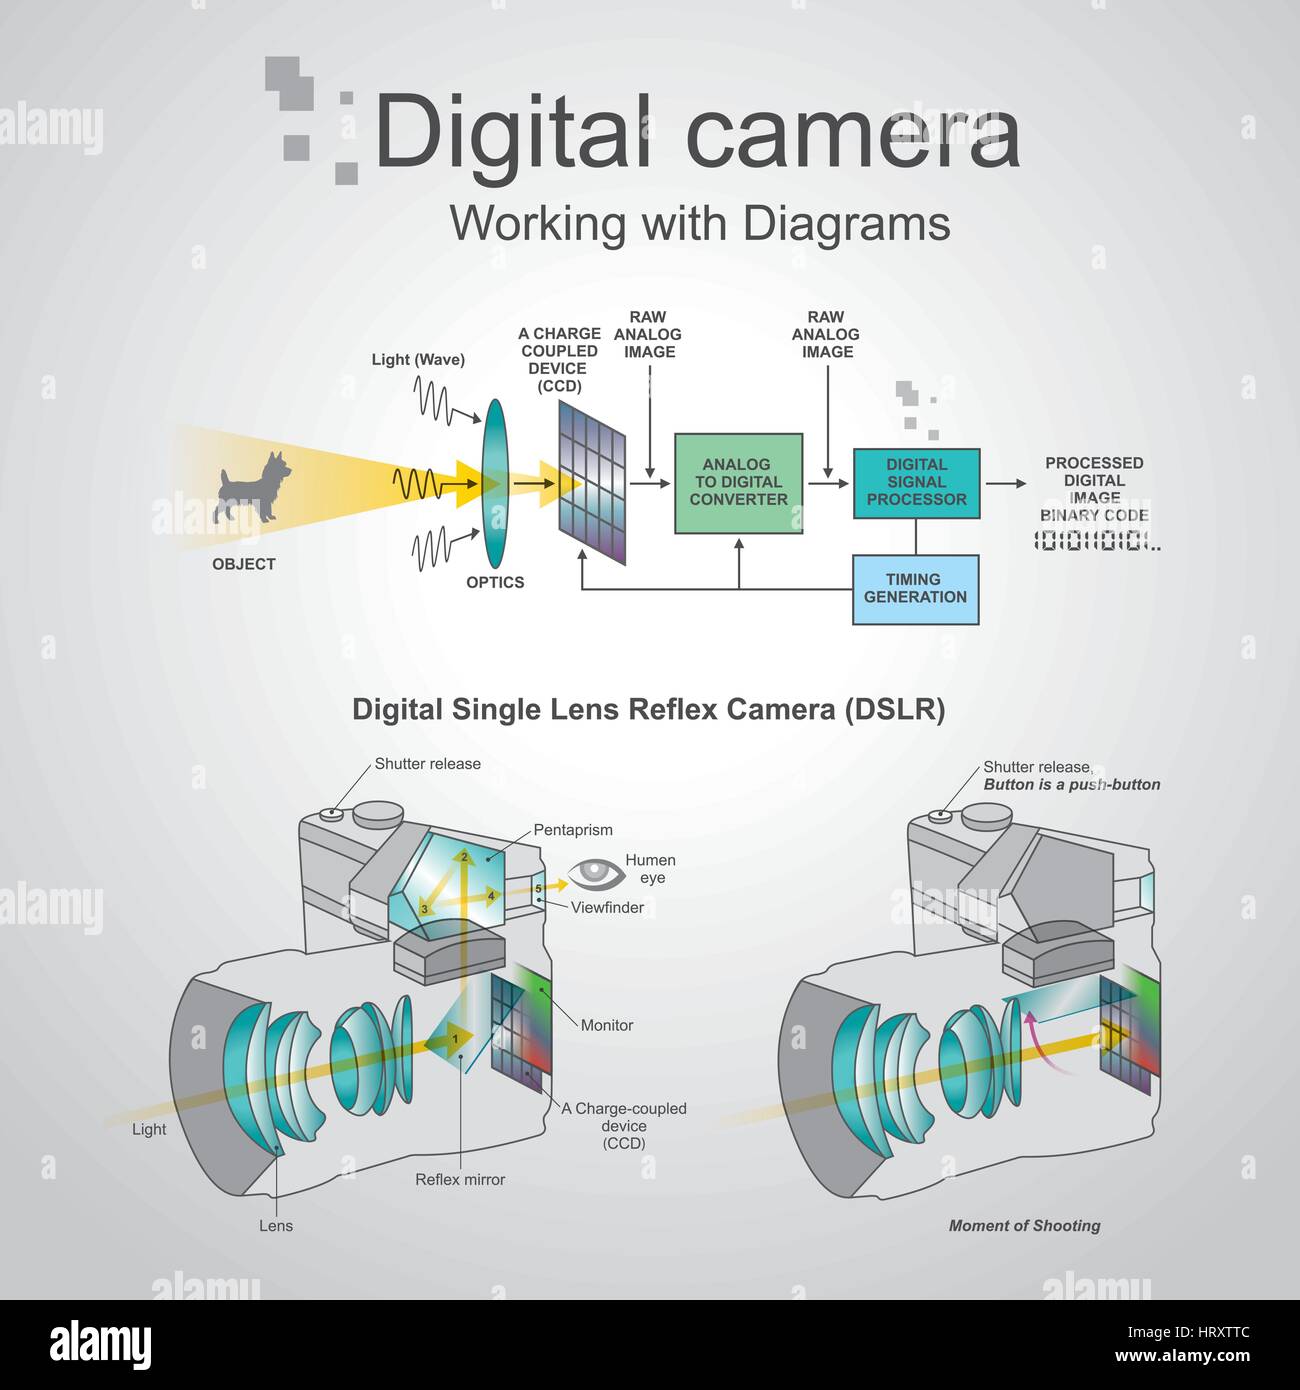 Un reflex appareil photo est un appareil photo numérique qui associe l'optique et les mécanismes d'un appareil photo numérique avec une imag Illustration de Vecteur